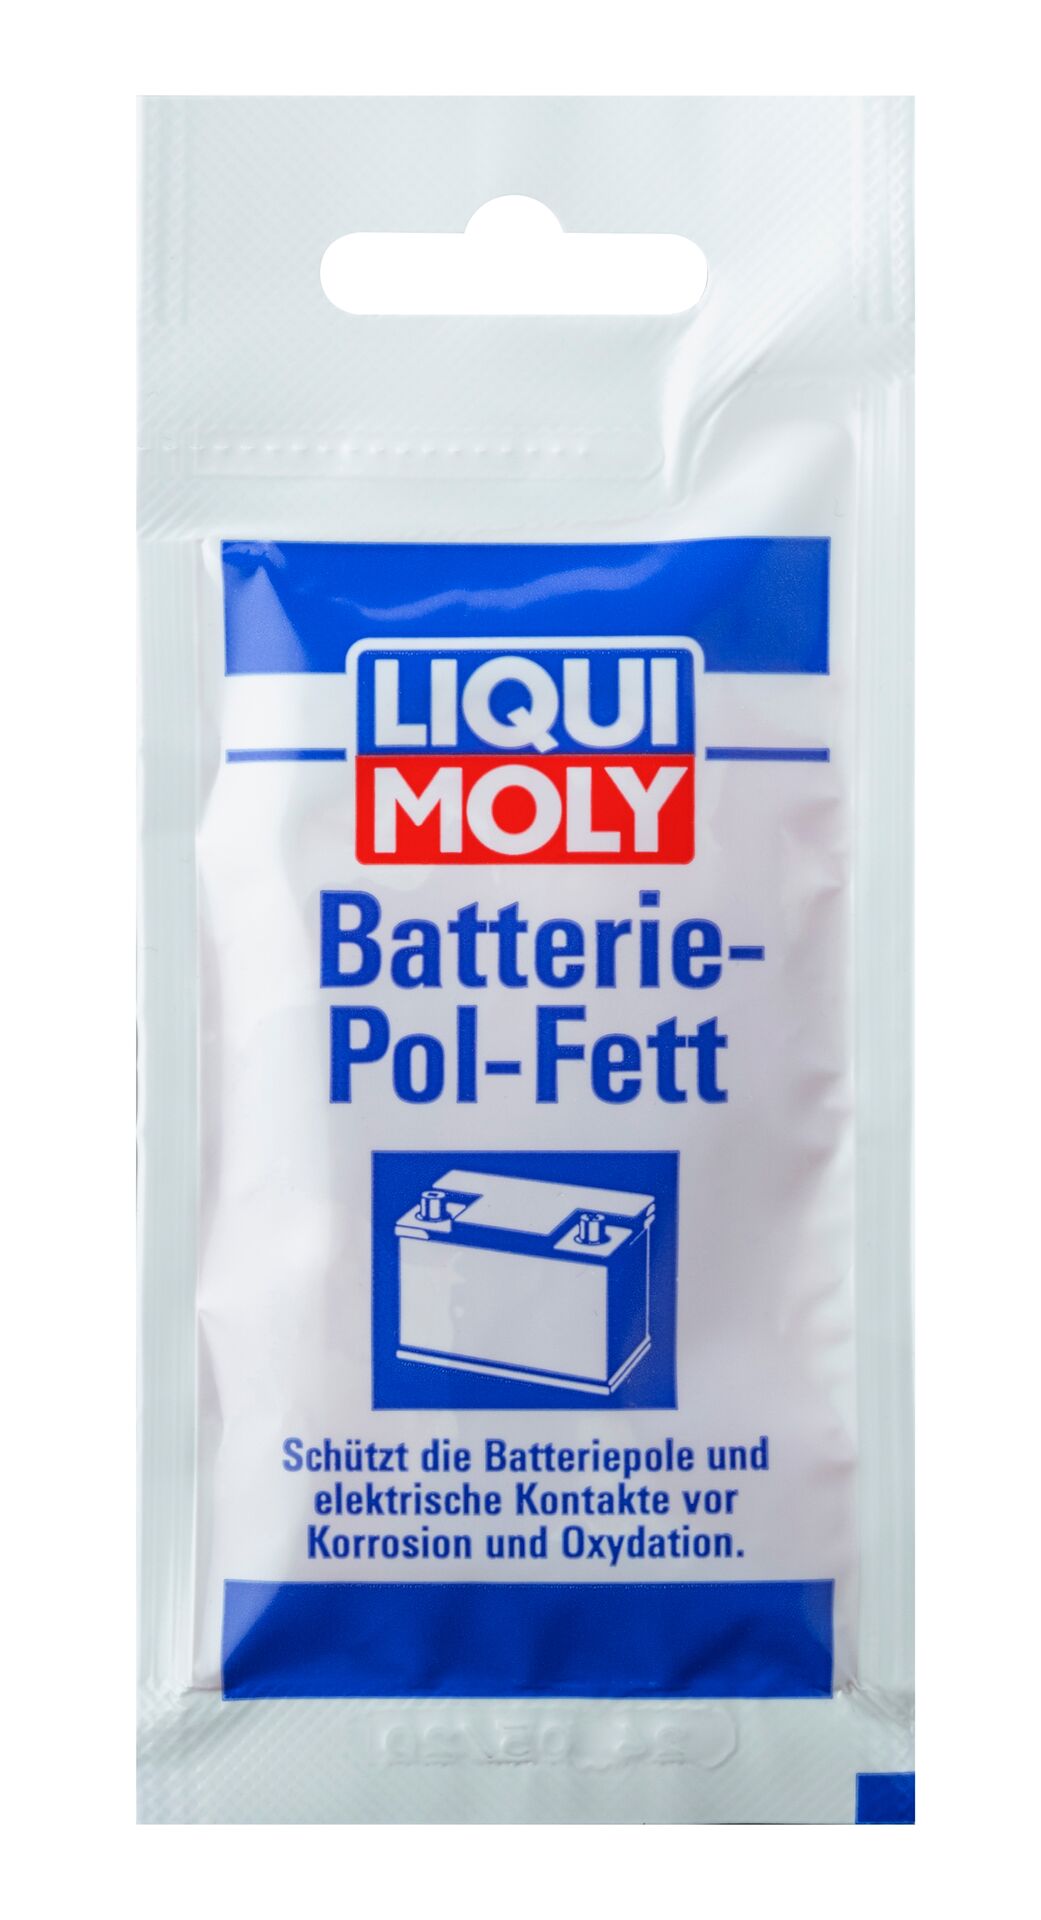 Liqui Moly Batterie Pol Fett Batteriepolfett Spezialfett 10g